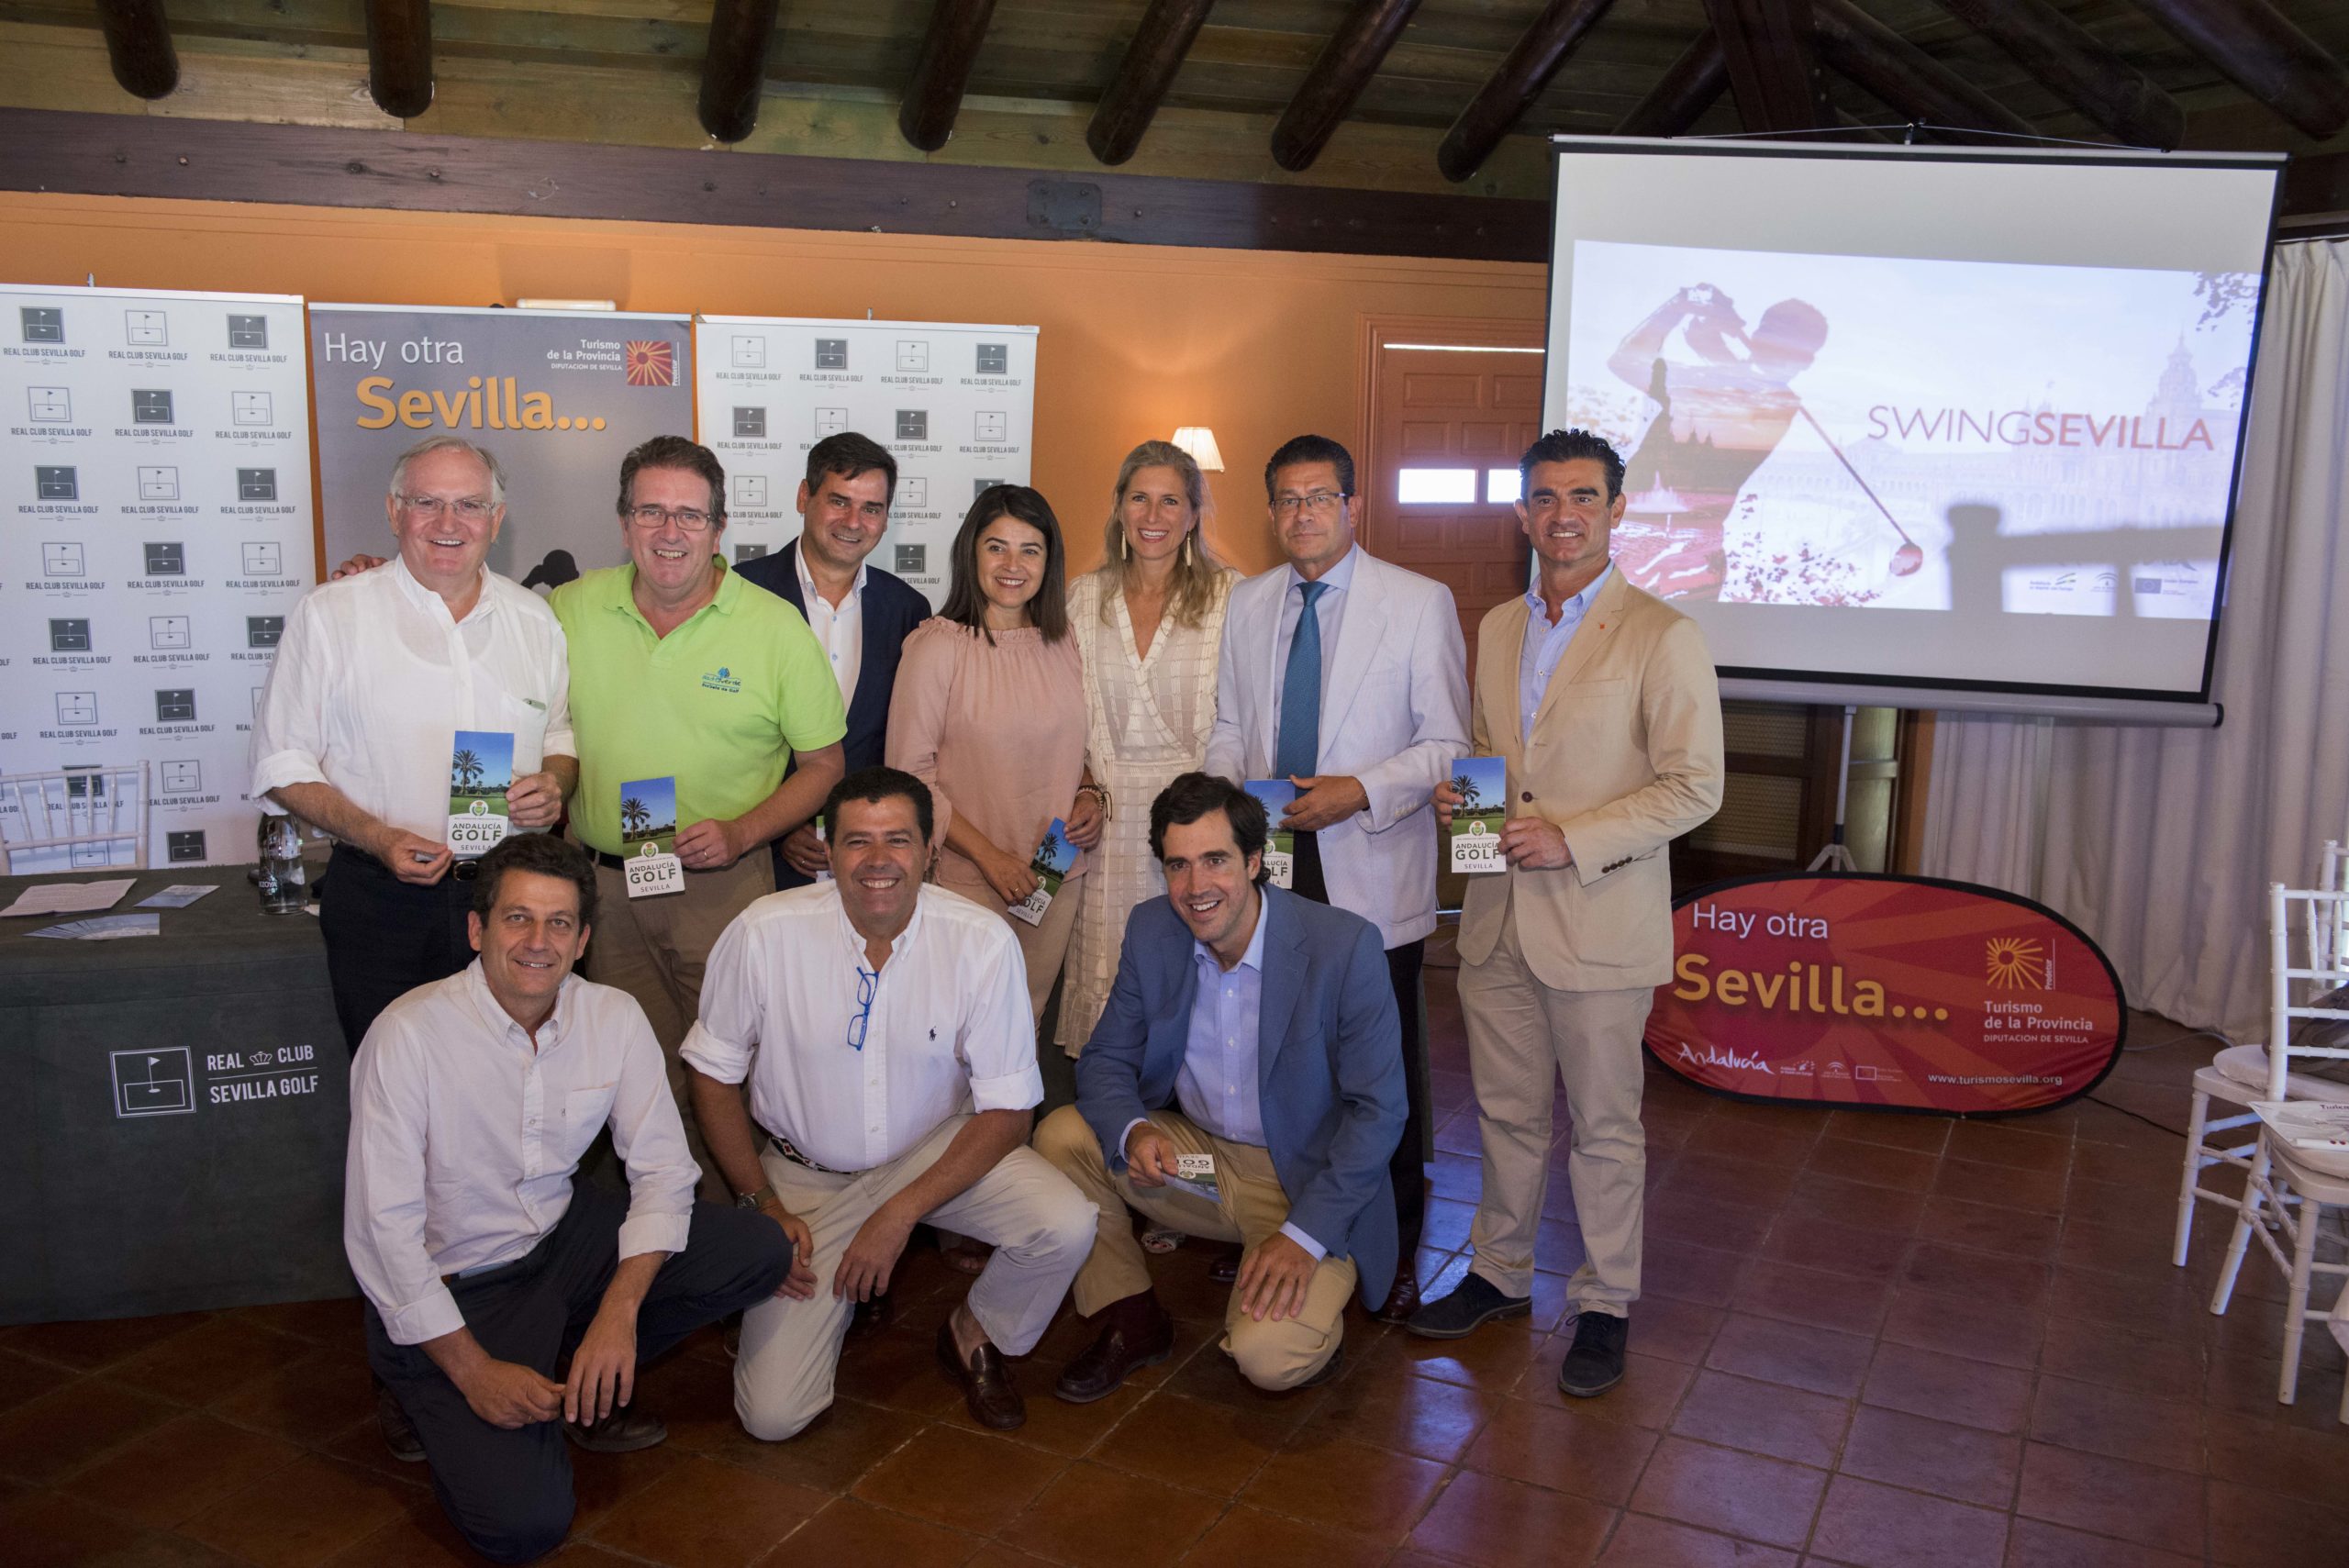 Presentación de “Swing Sevilla” en el Real Club Sevilla Golf